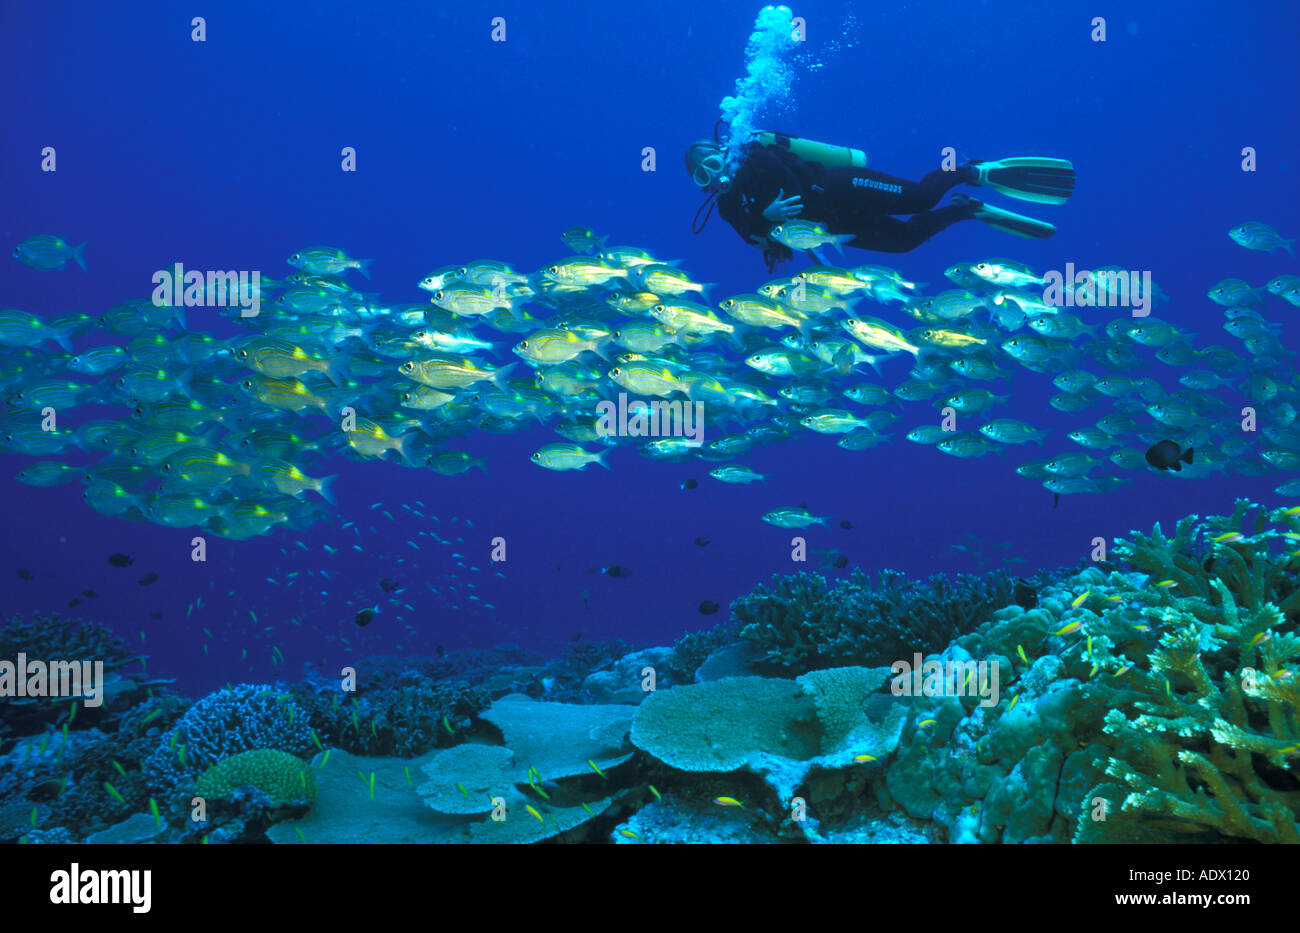 Scuola di pesce sulla barriera corallina mentre la persona nuoto nella muta, basso angolo di visione Foto Stock